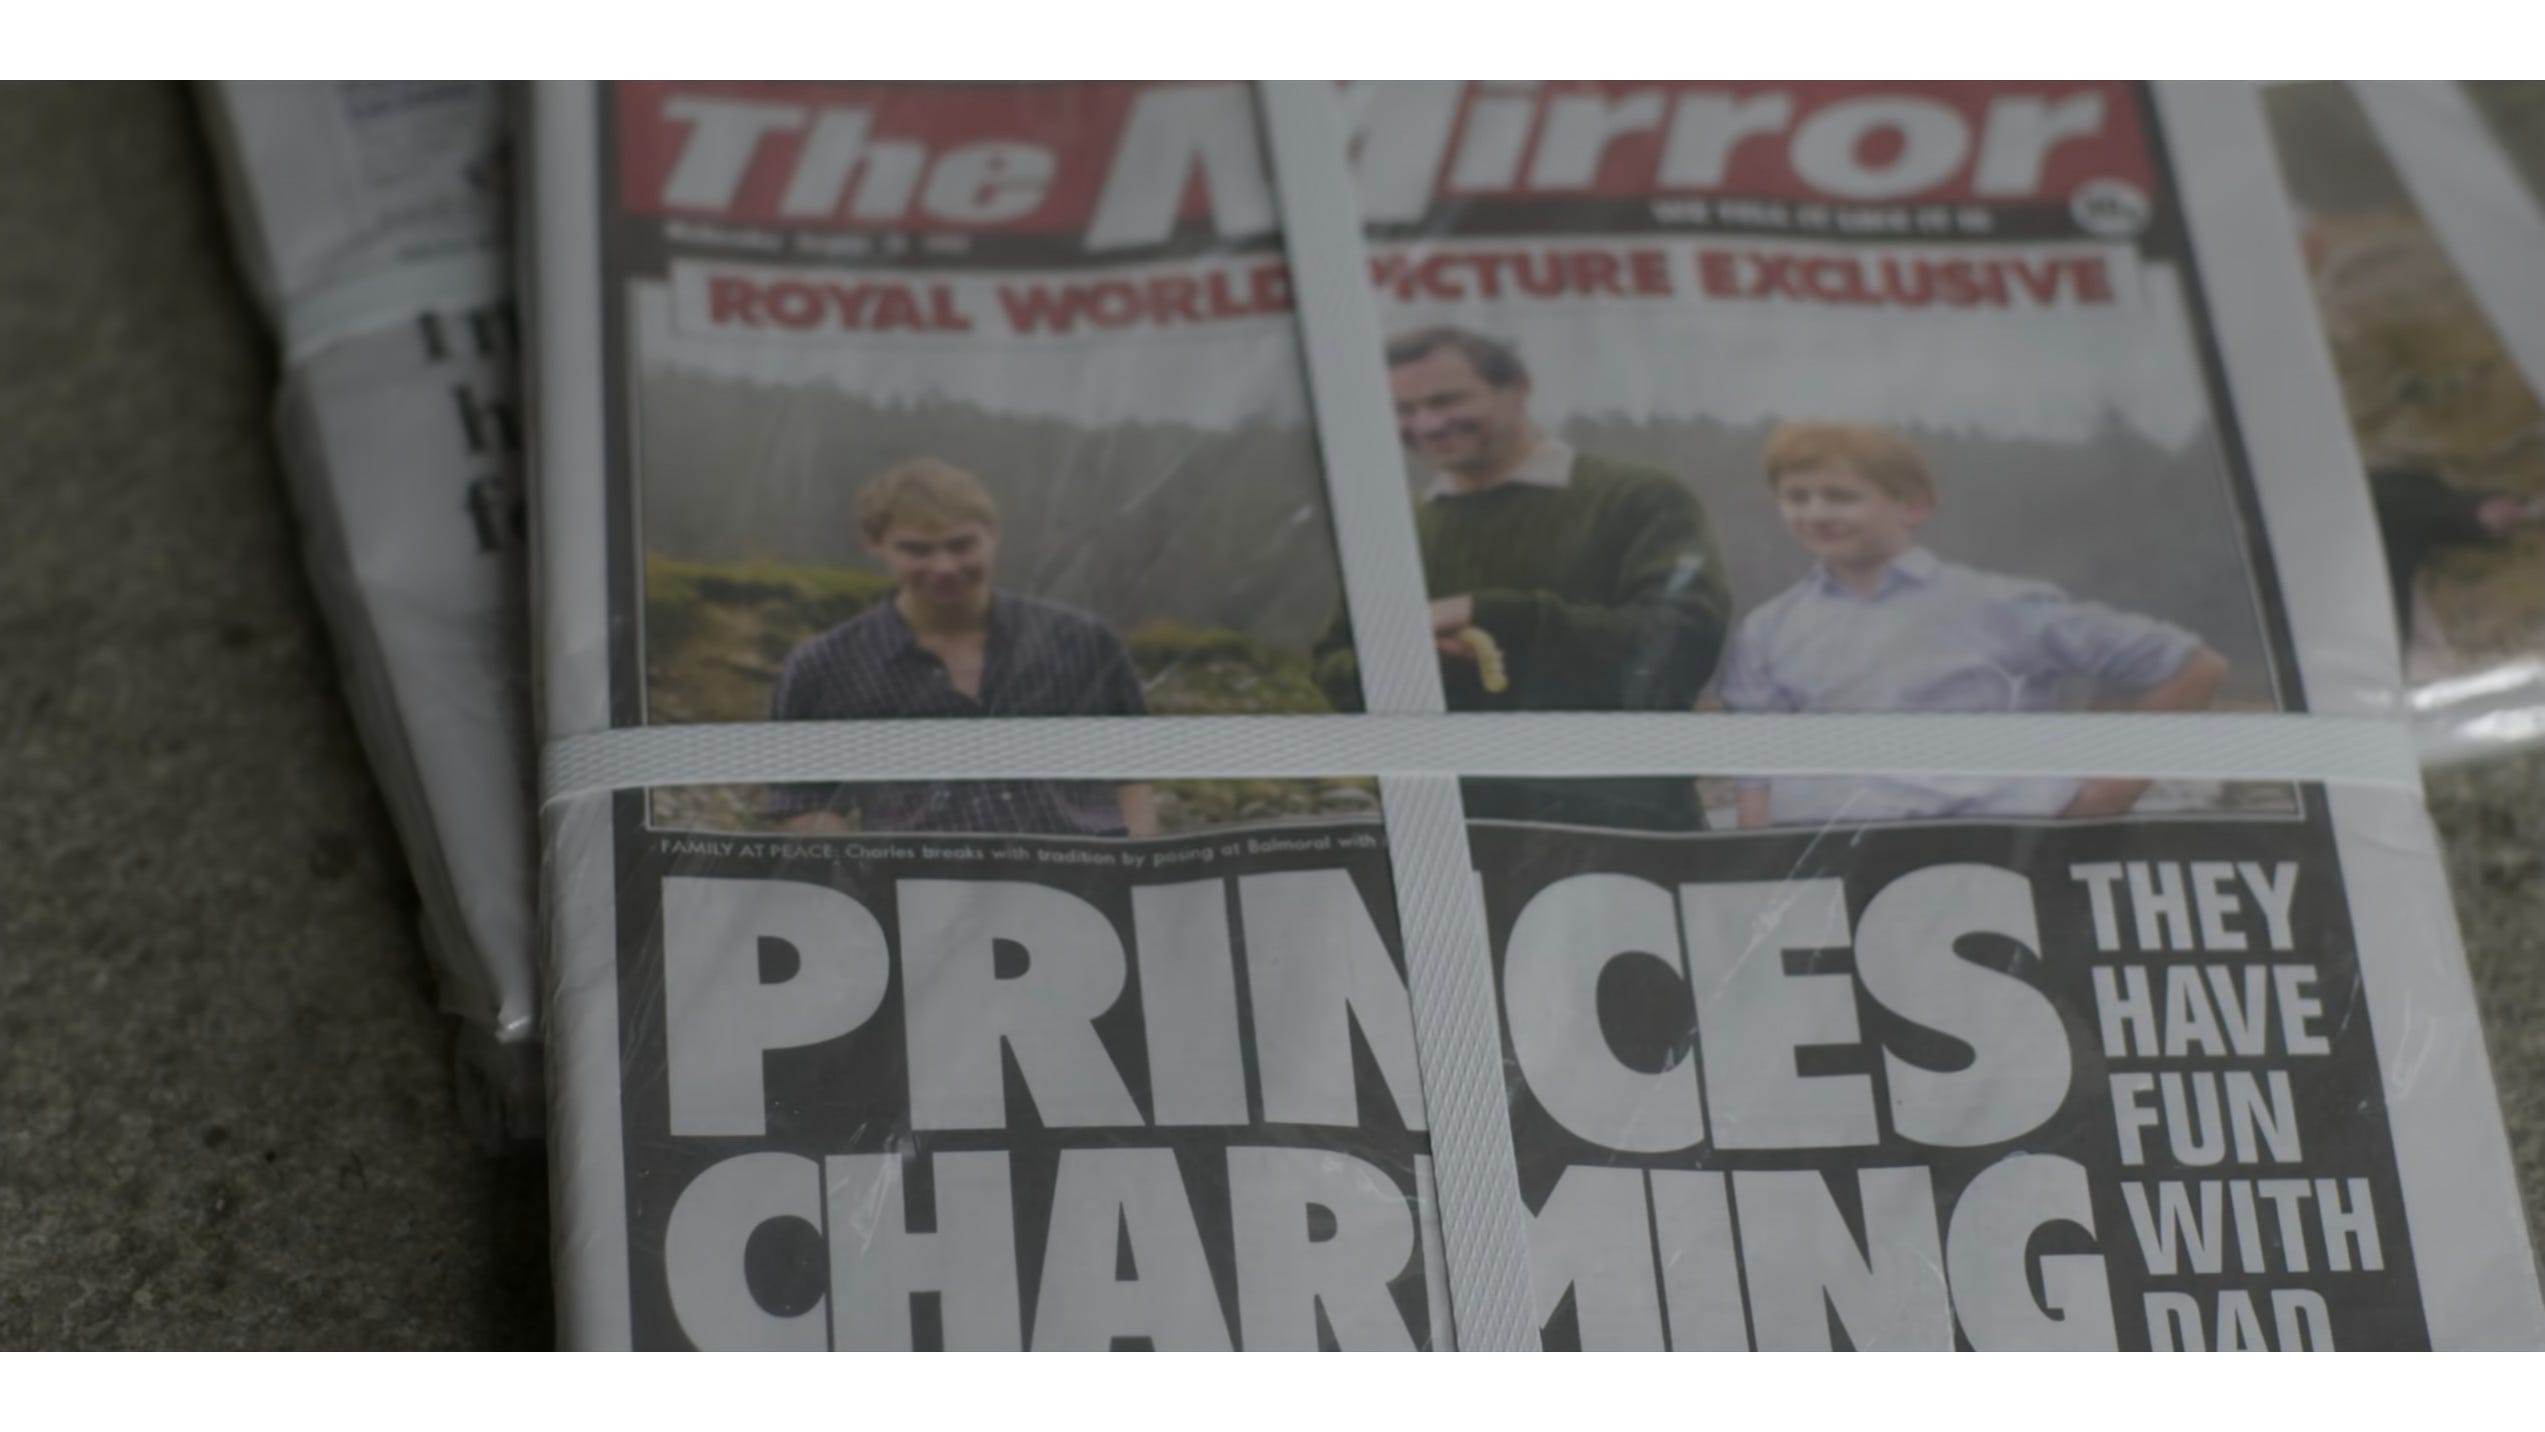 Die Fotos erschienen auf der Titelseite derselben Zeitung, The Mirror.